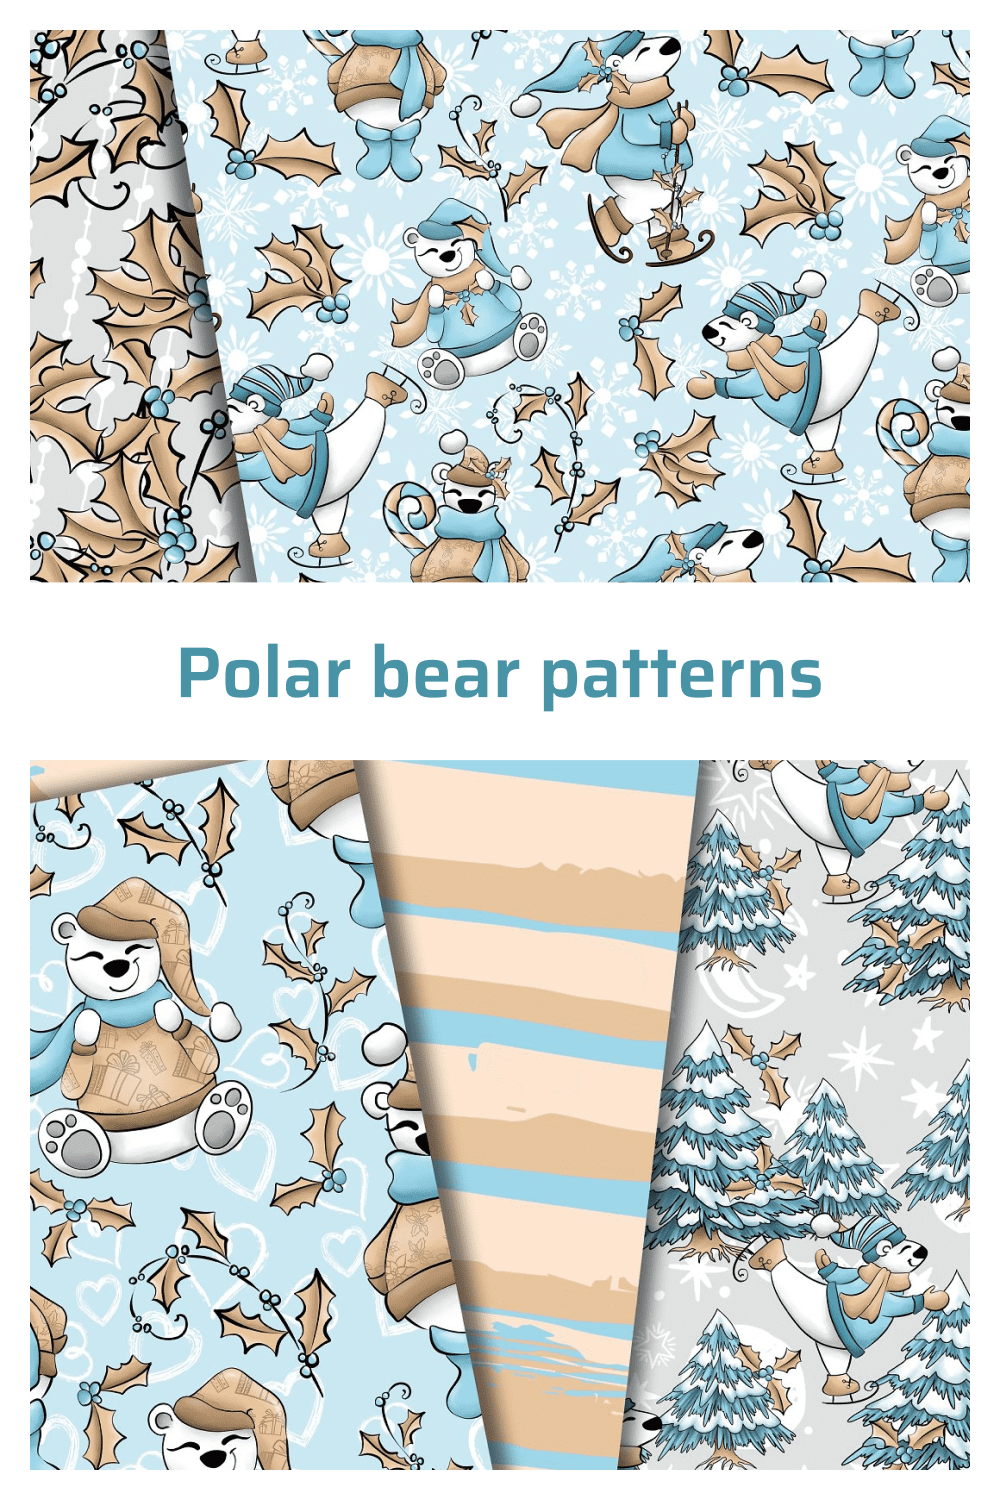 polar bear patterns pint1.